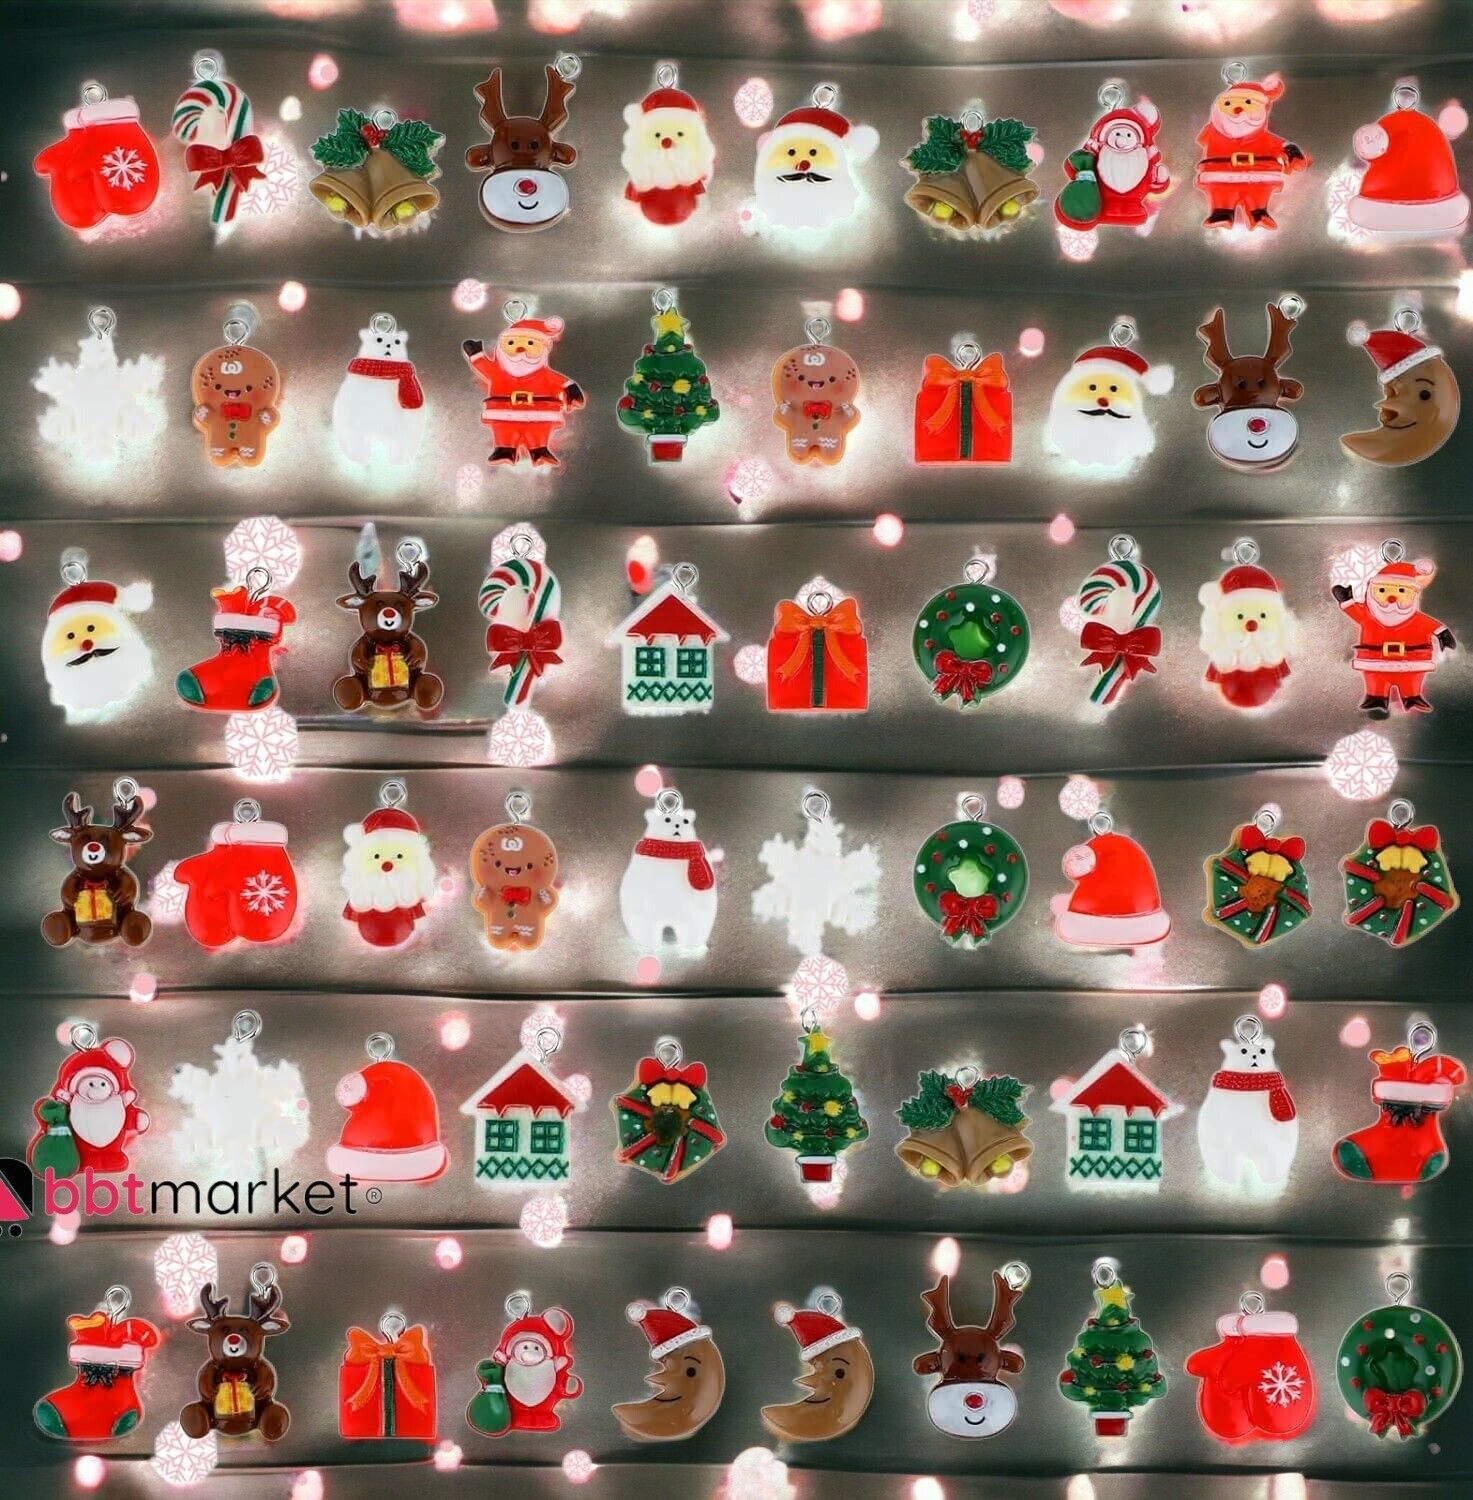 30 Stück Miniatur -Weihnachtsbaum-Hängeornamente, Weihnachtsbaum-Dekoration neu